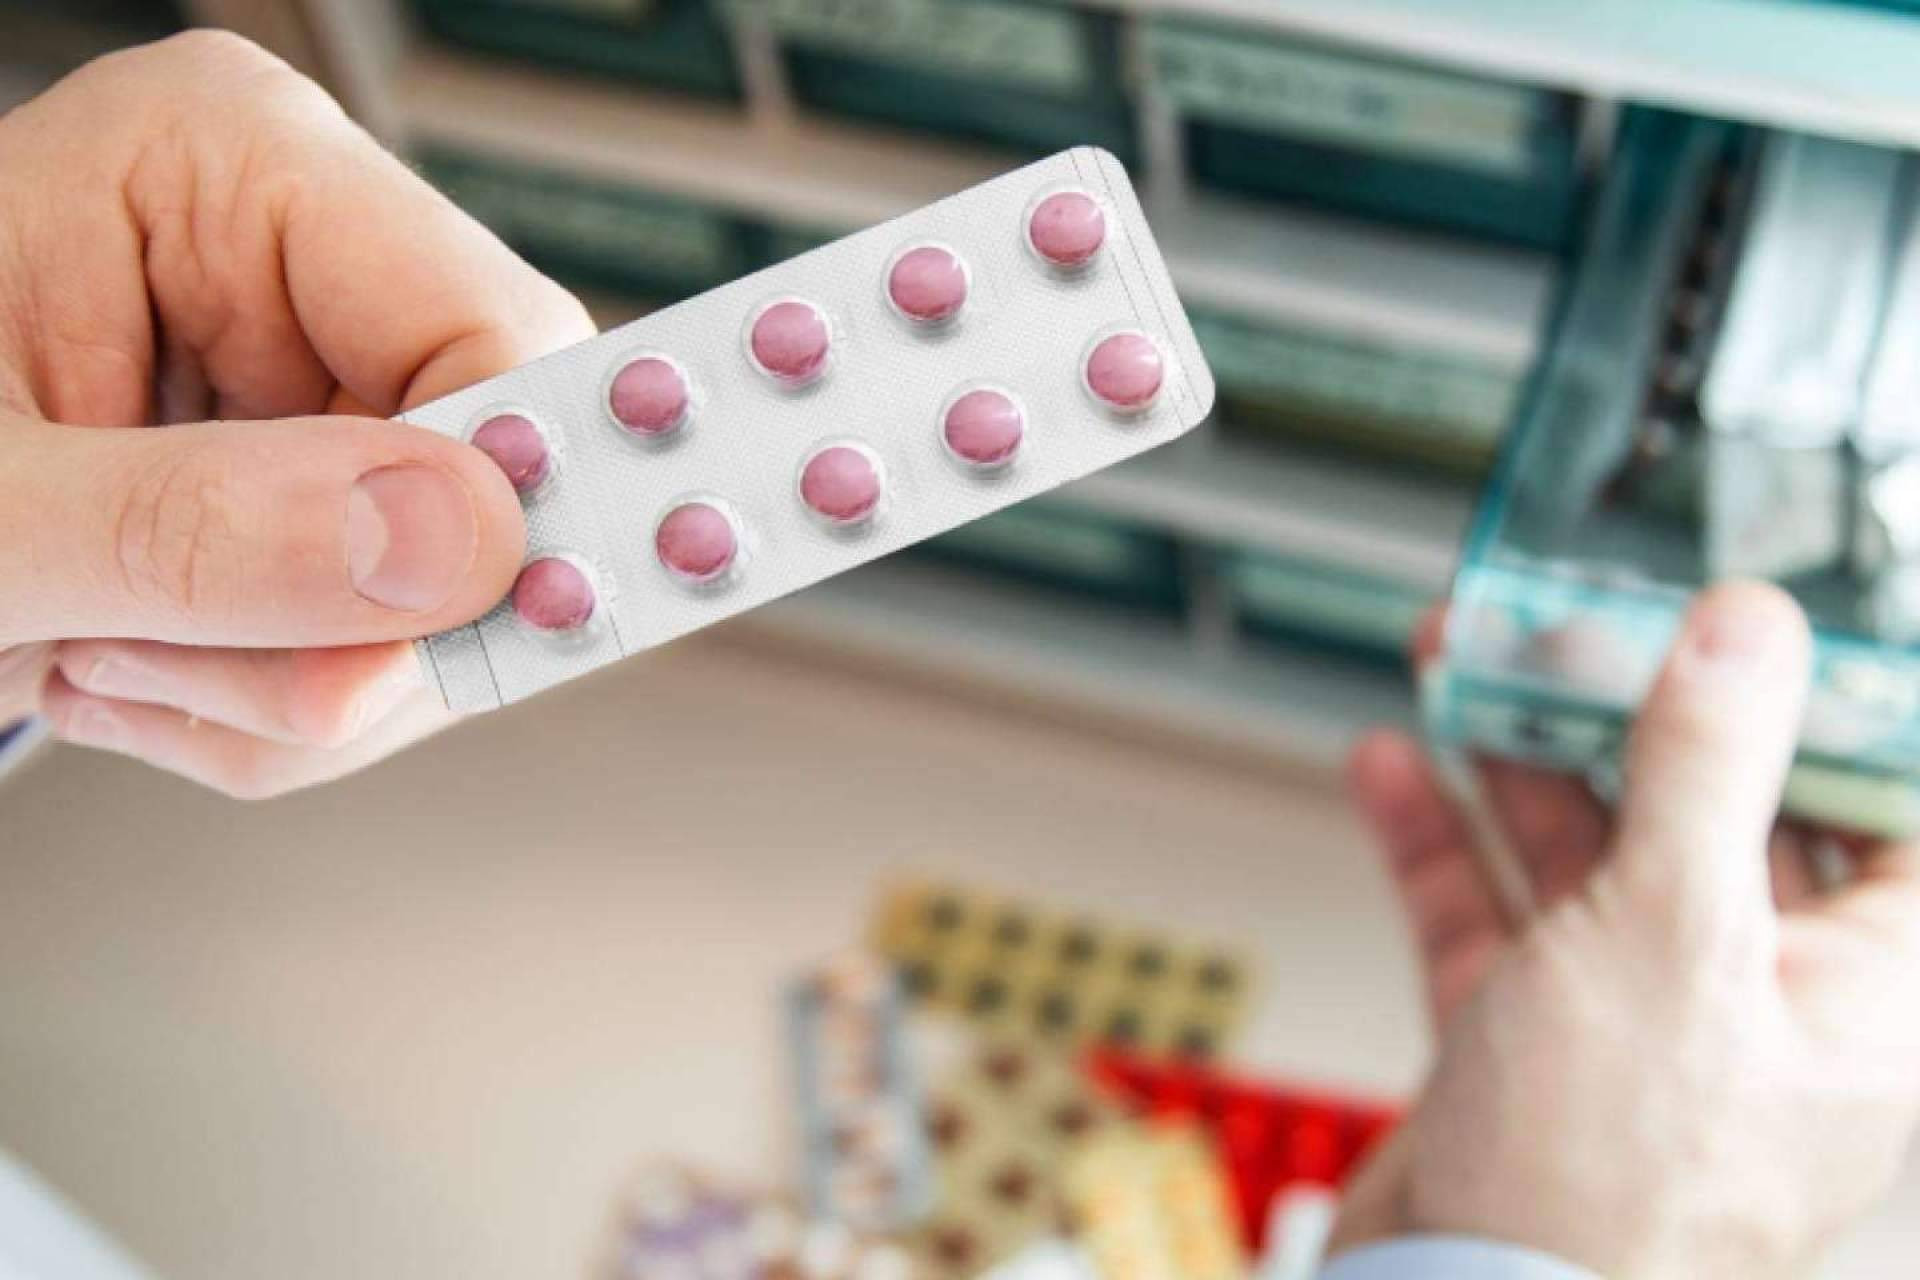  Urbagesa Farmacias muestra las estrategias para enfrentar la escasez de medicamentos en las farmacias 